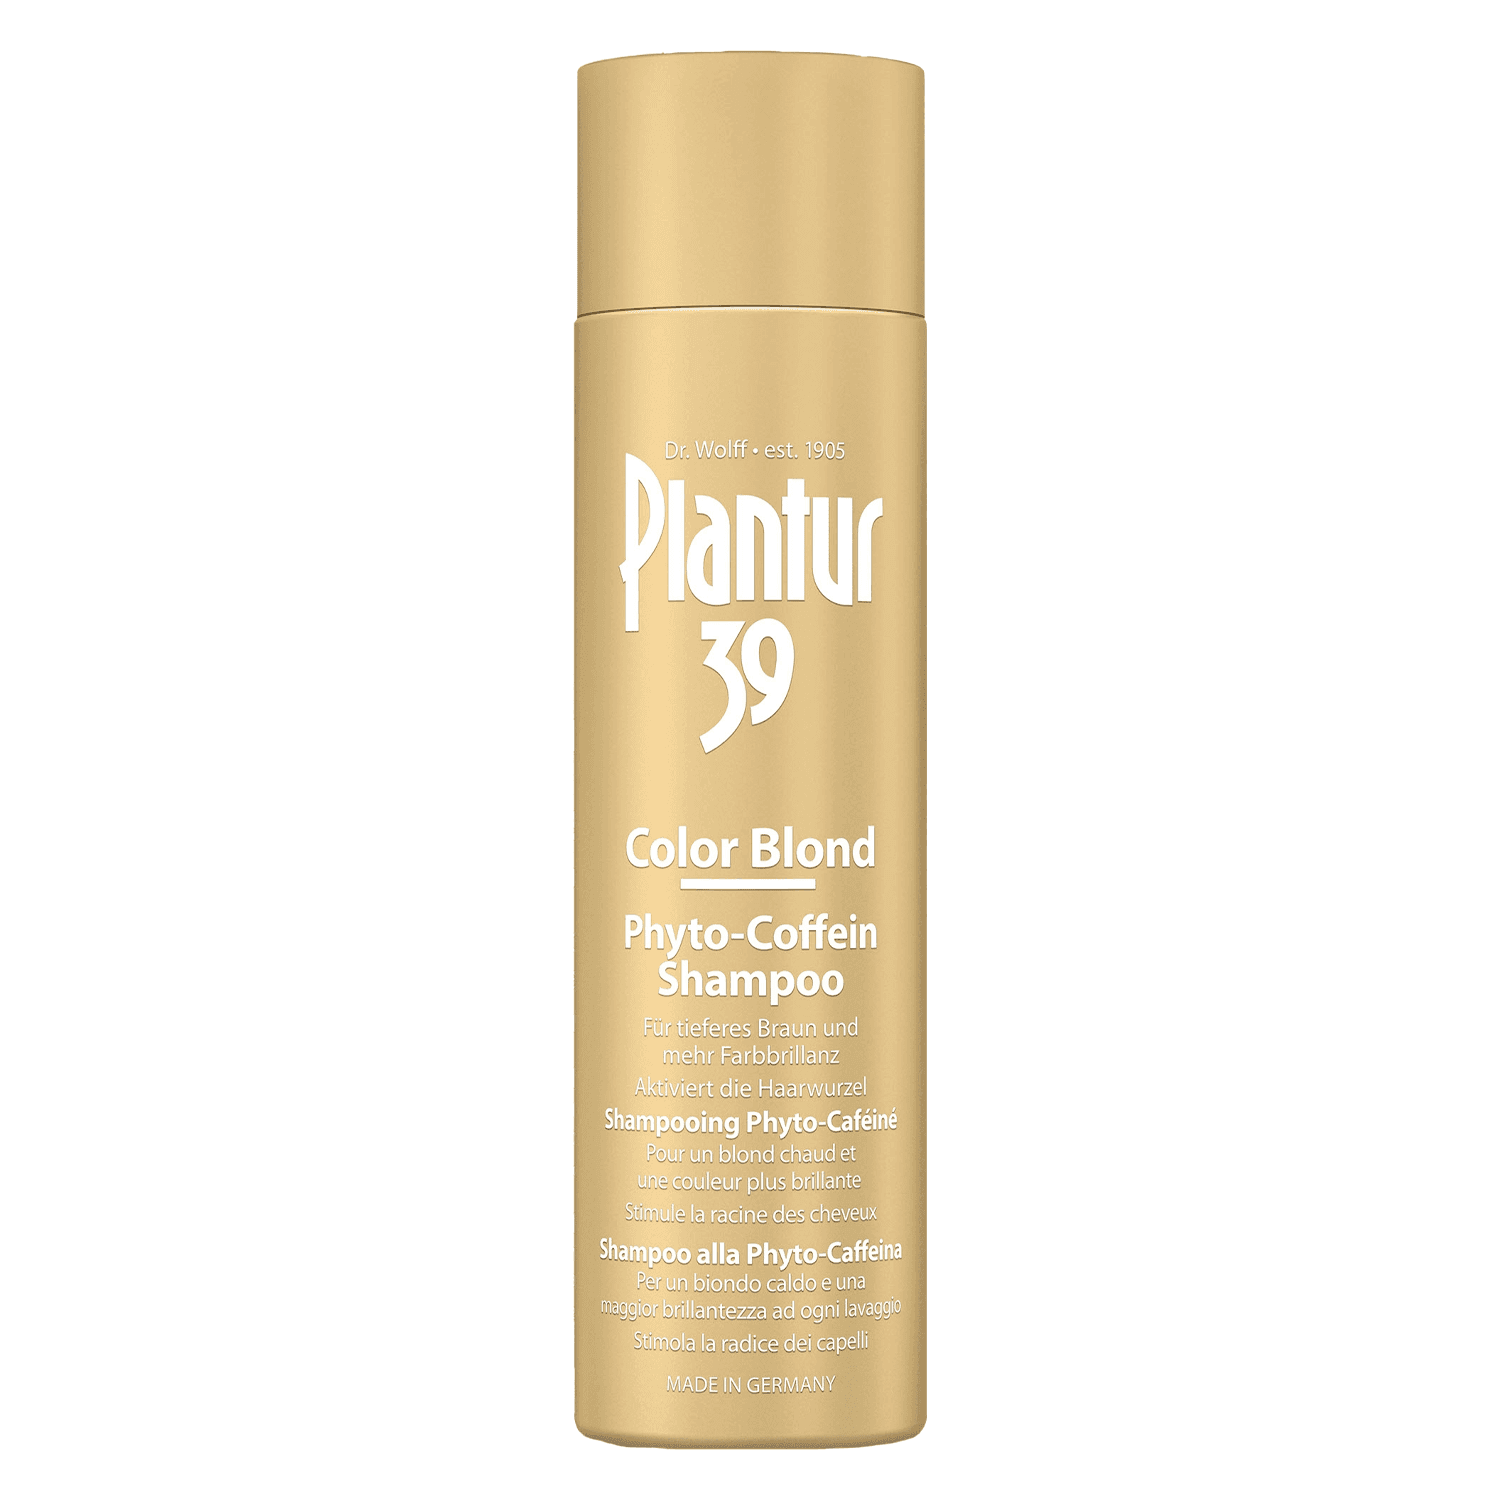 Plantur 39 - Shampooing Phyto-Caféiné Color Blond